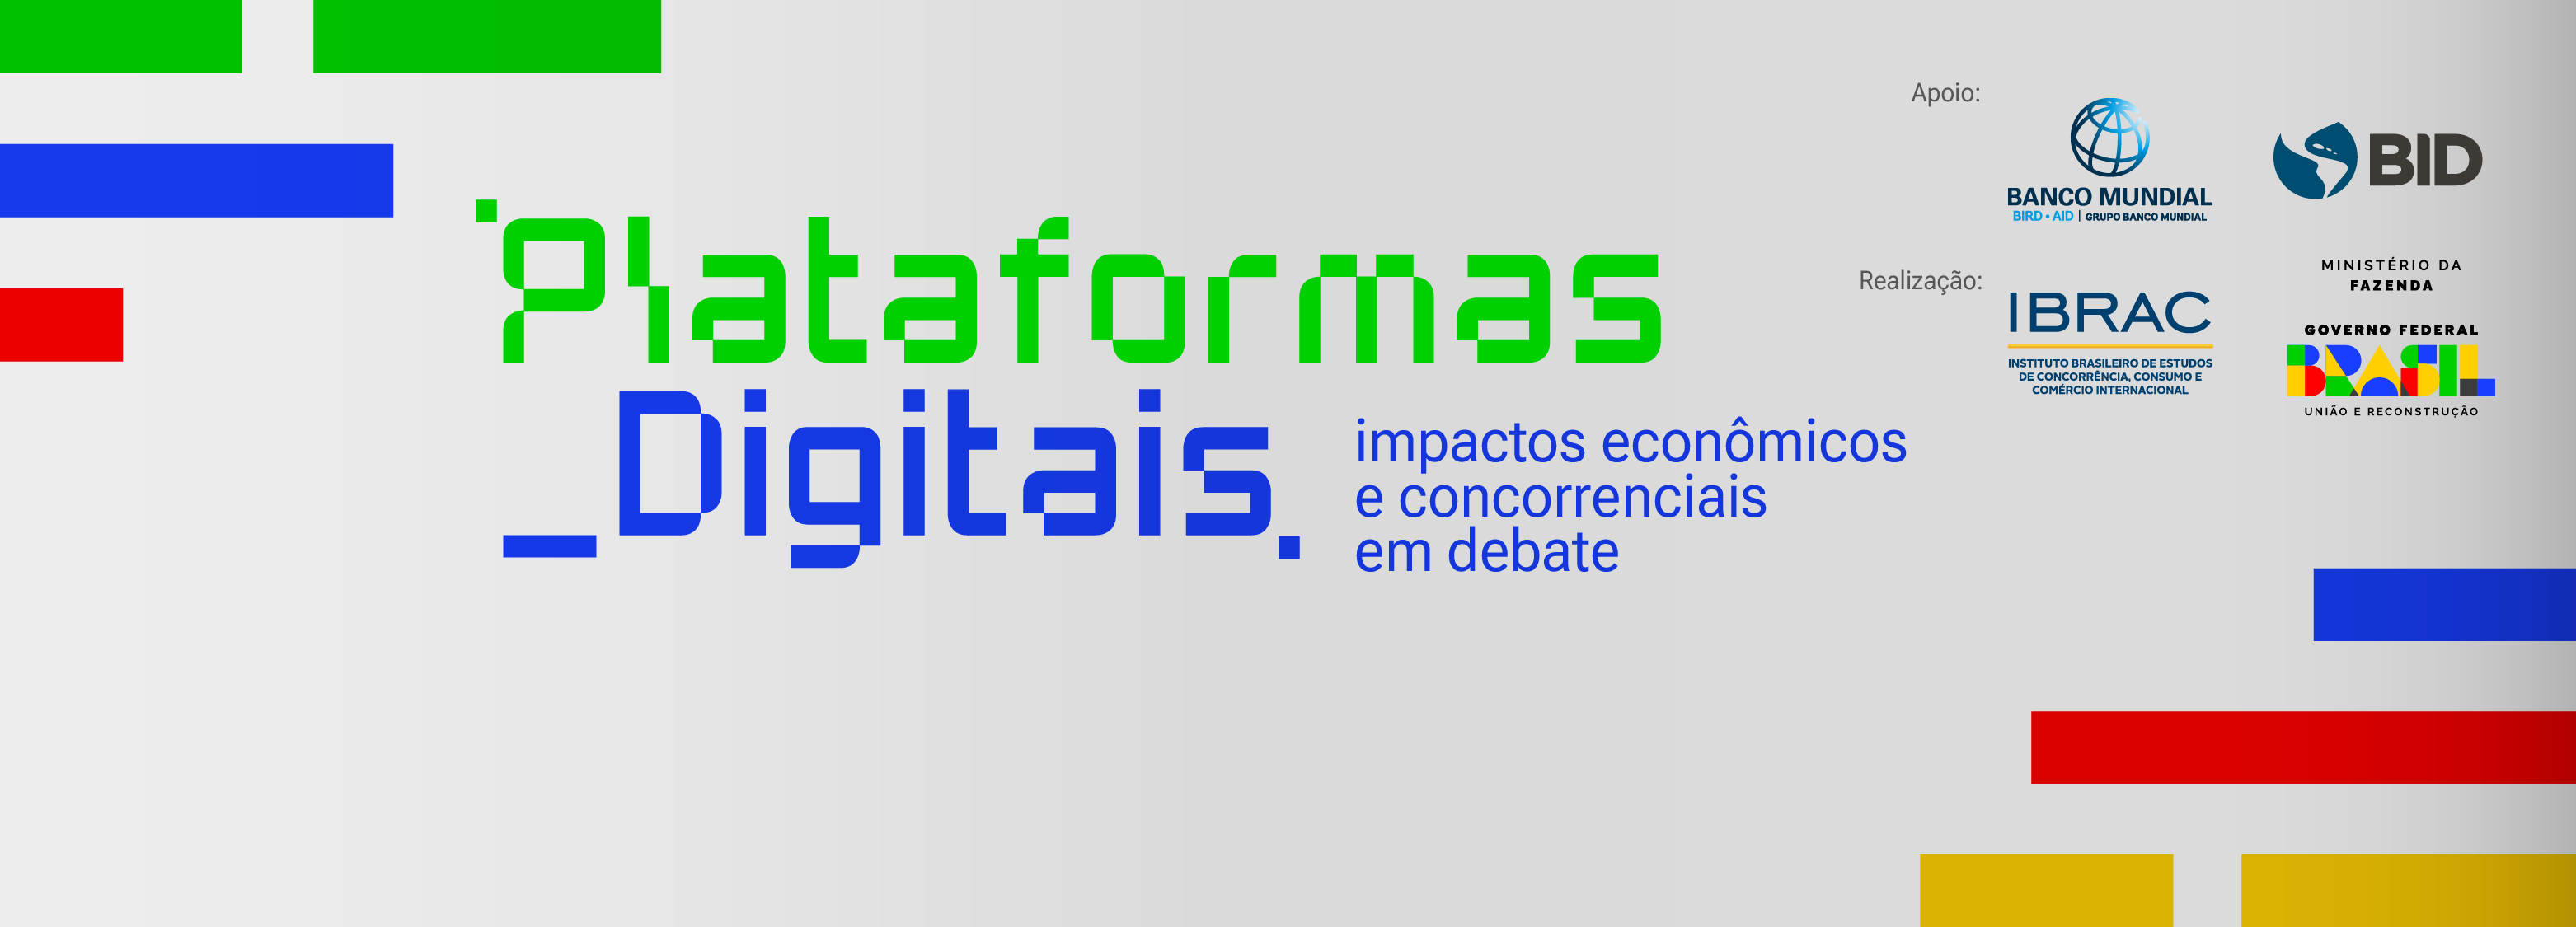 plataformas digitais. Impactos Econômicos e concorrenciais em debate